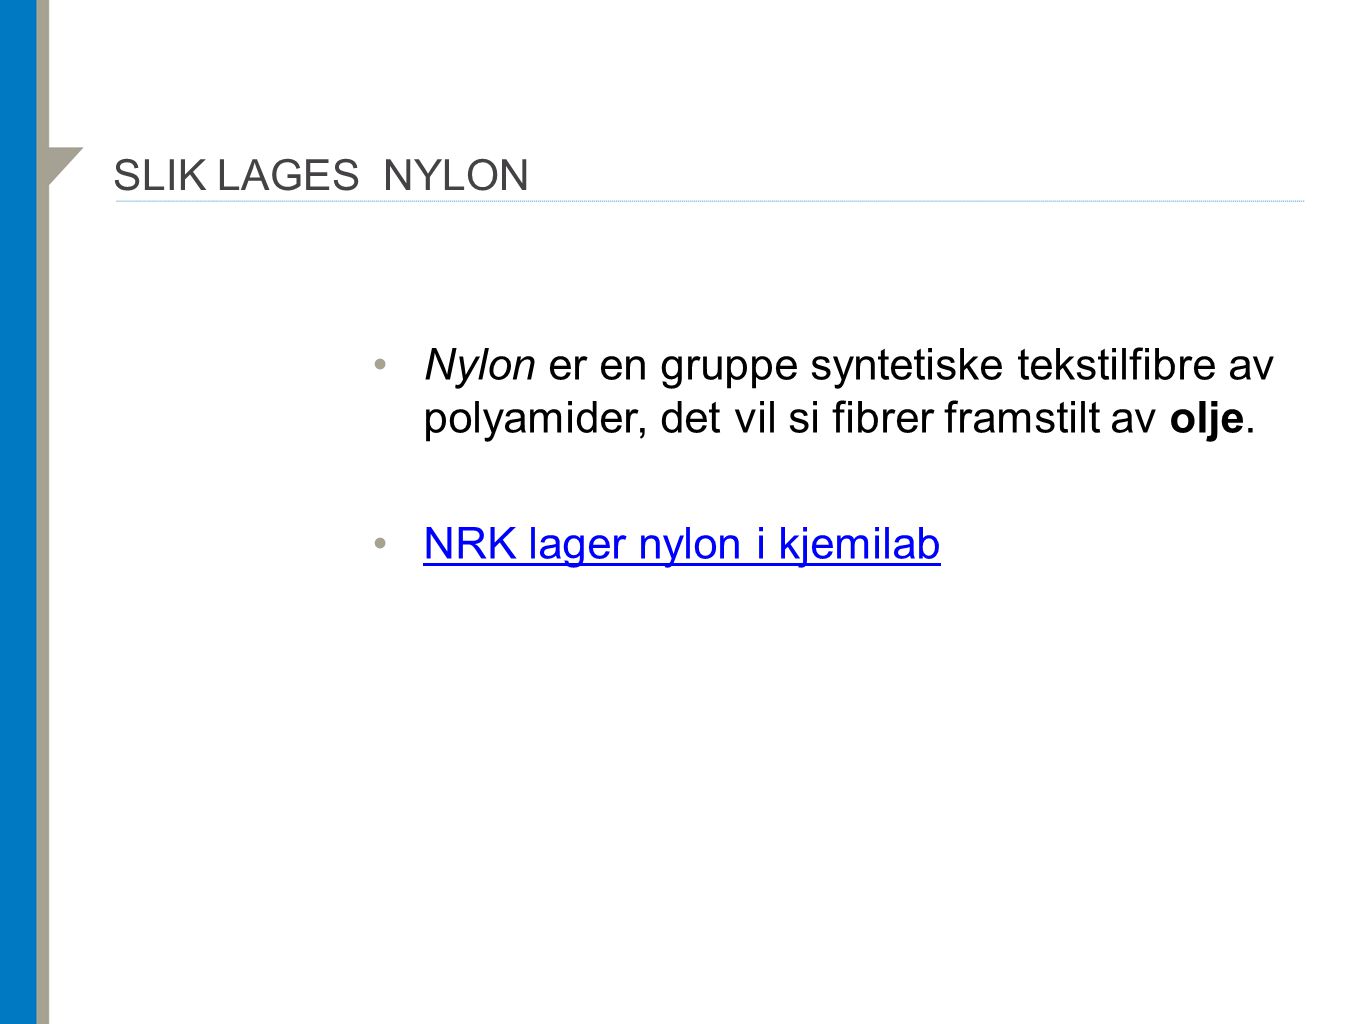 NRK lager nylon i kjemilab